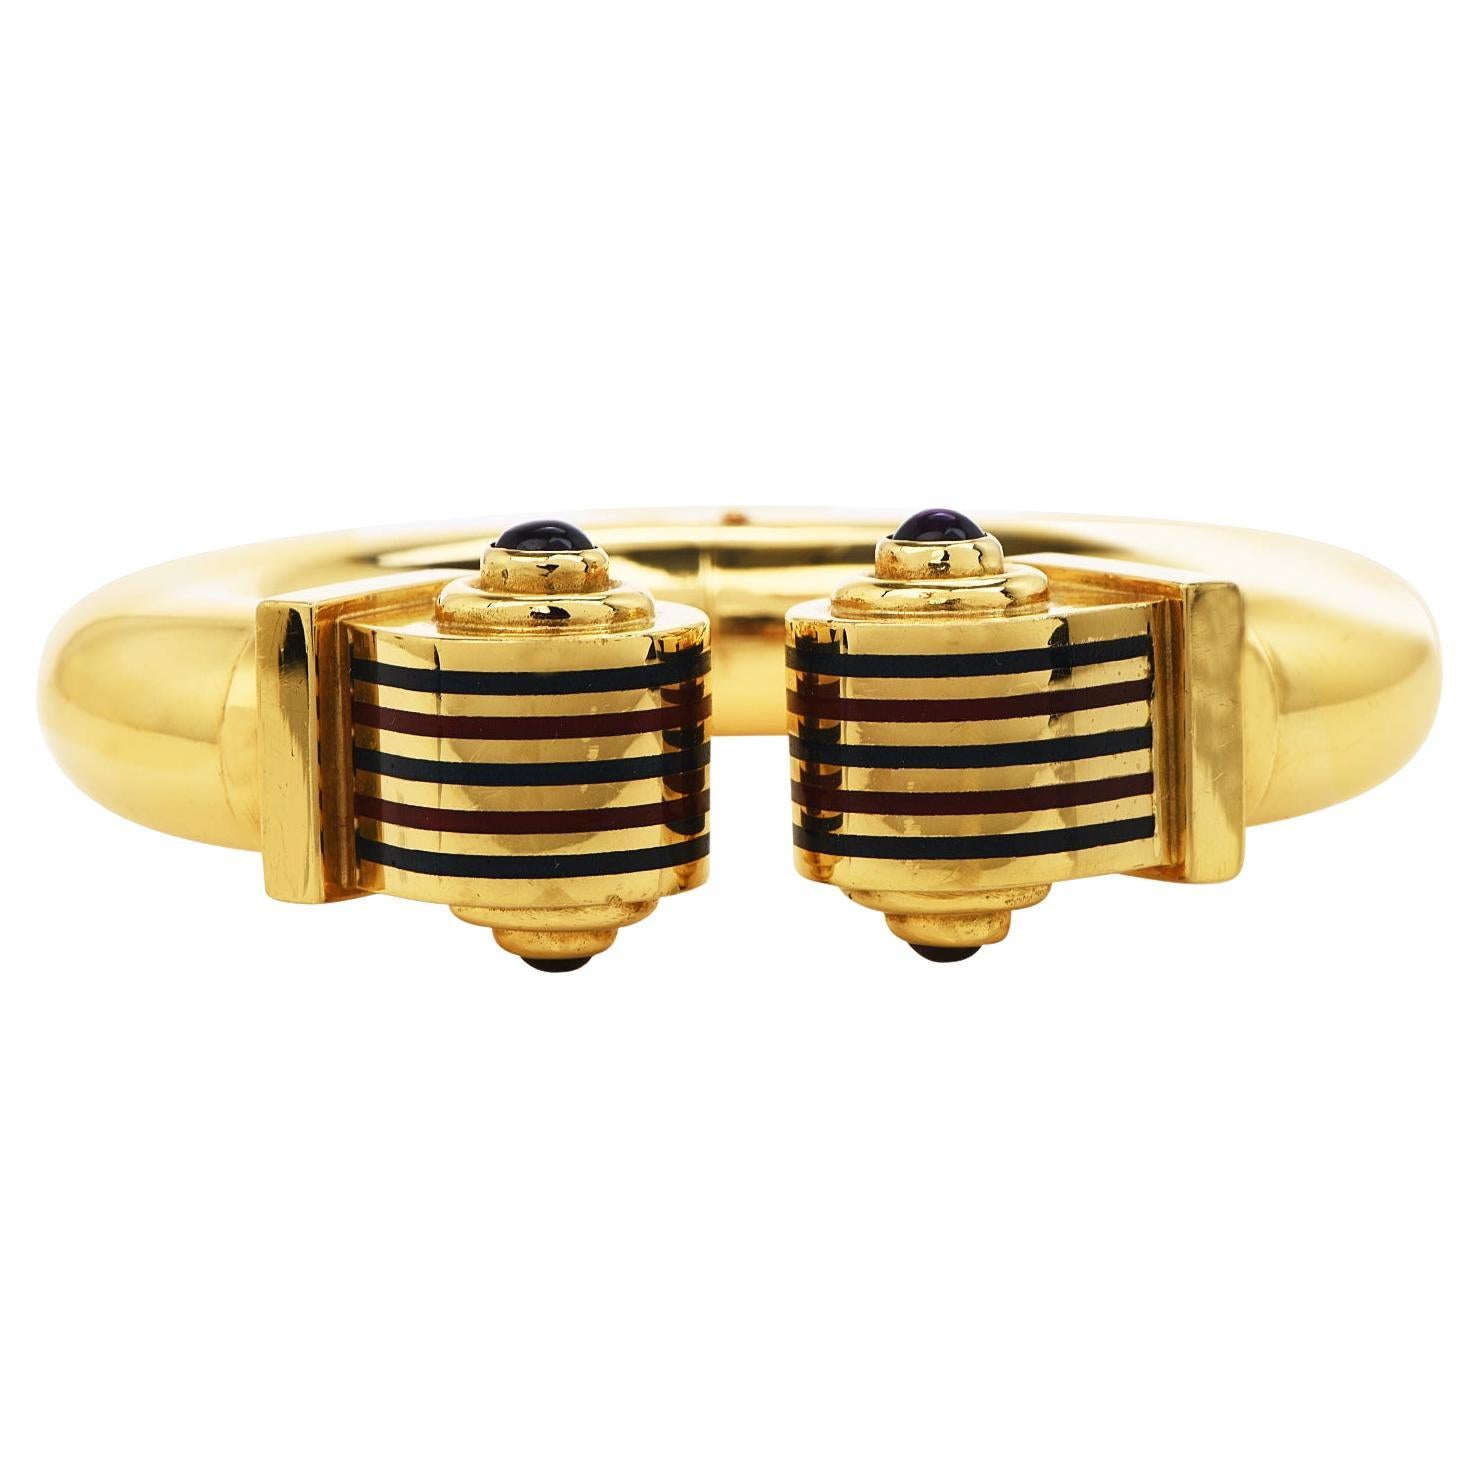  Estate High polish Italian Gold Amethyst Enamel Cuff Bangle  Bracelet 